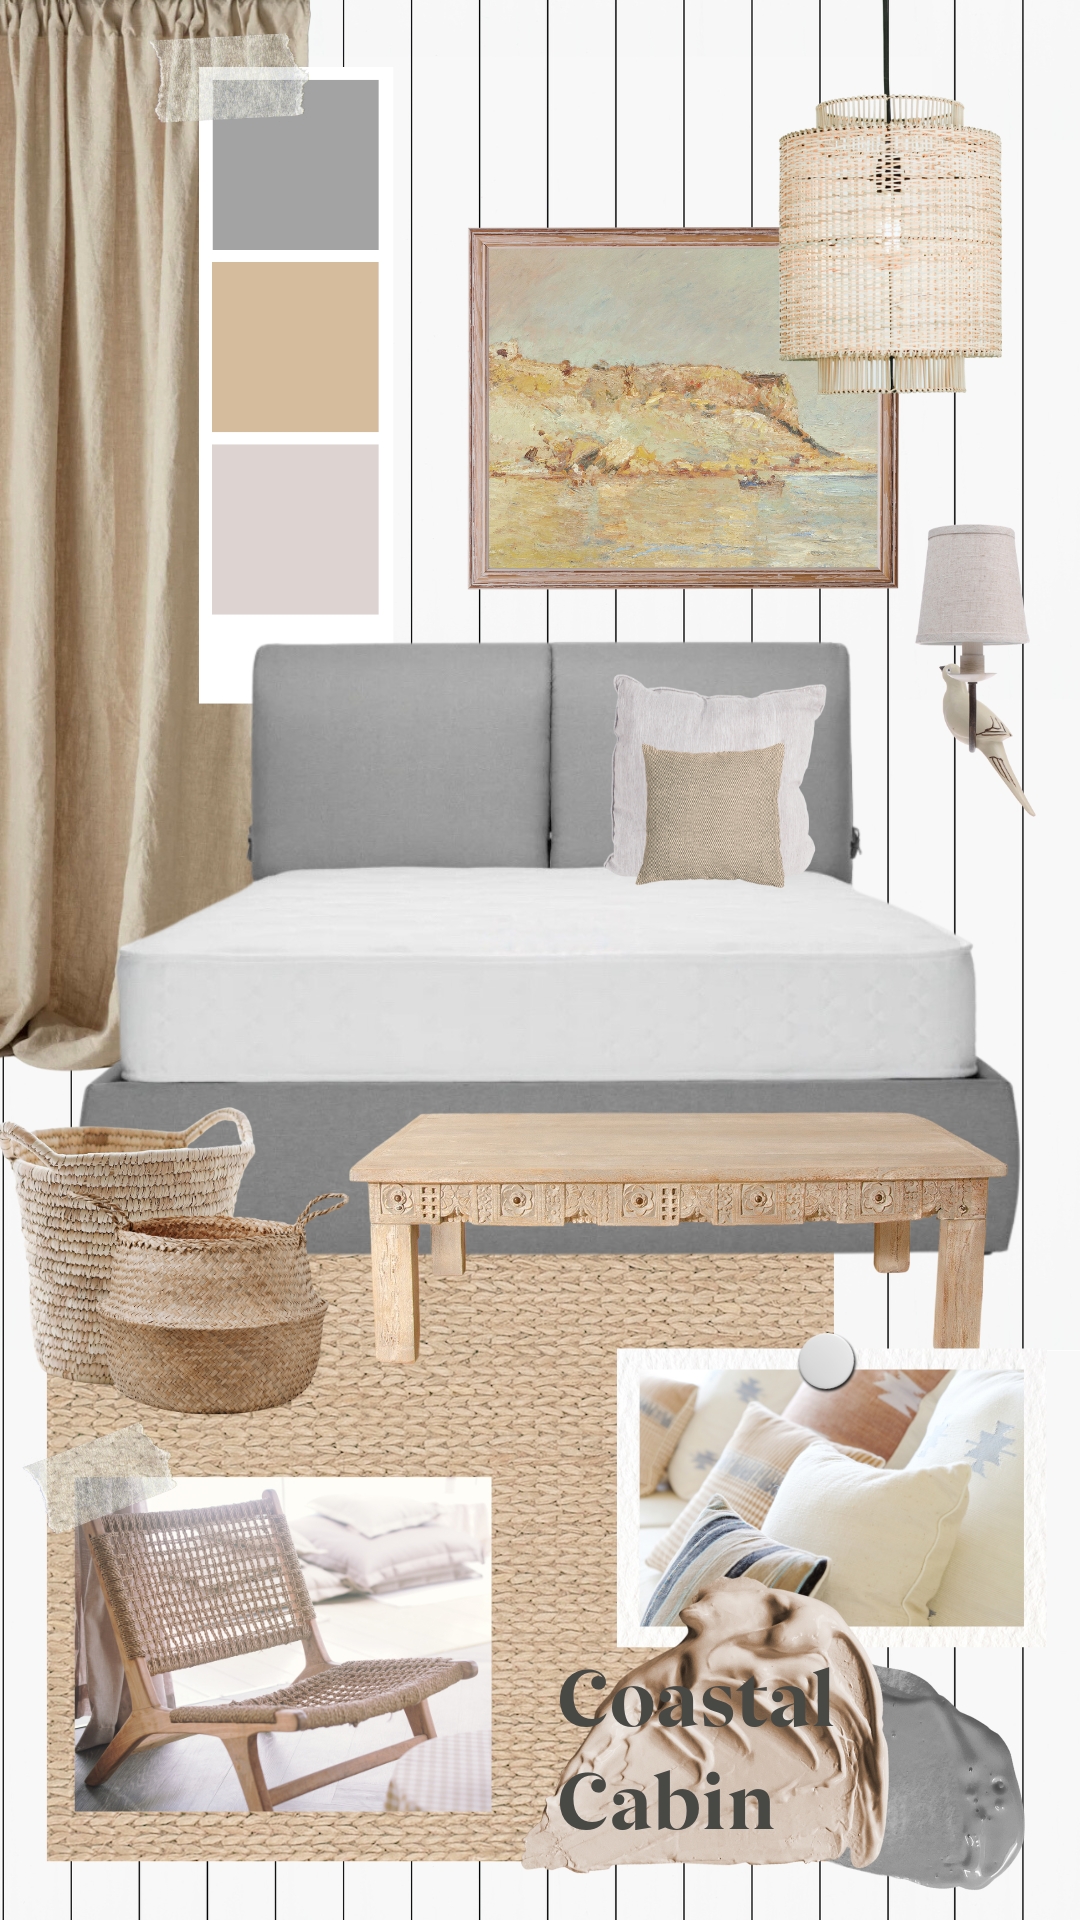 Coastal Cabin Style Bedroom Mood Board